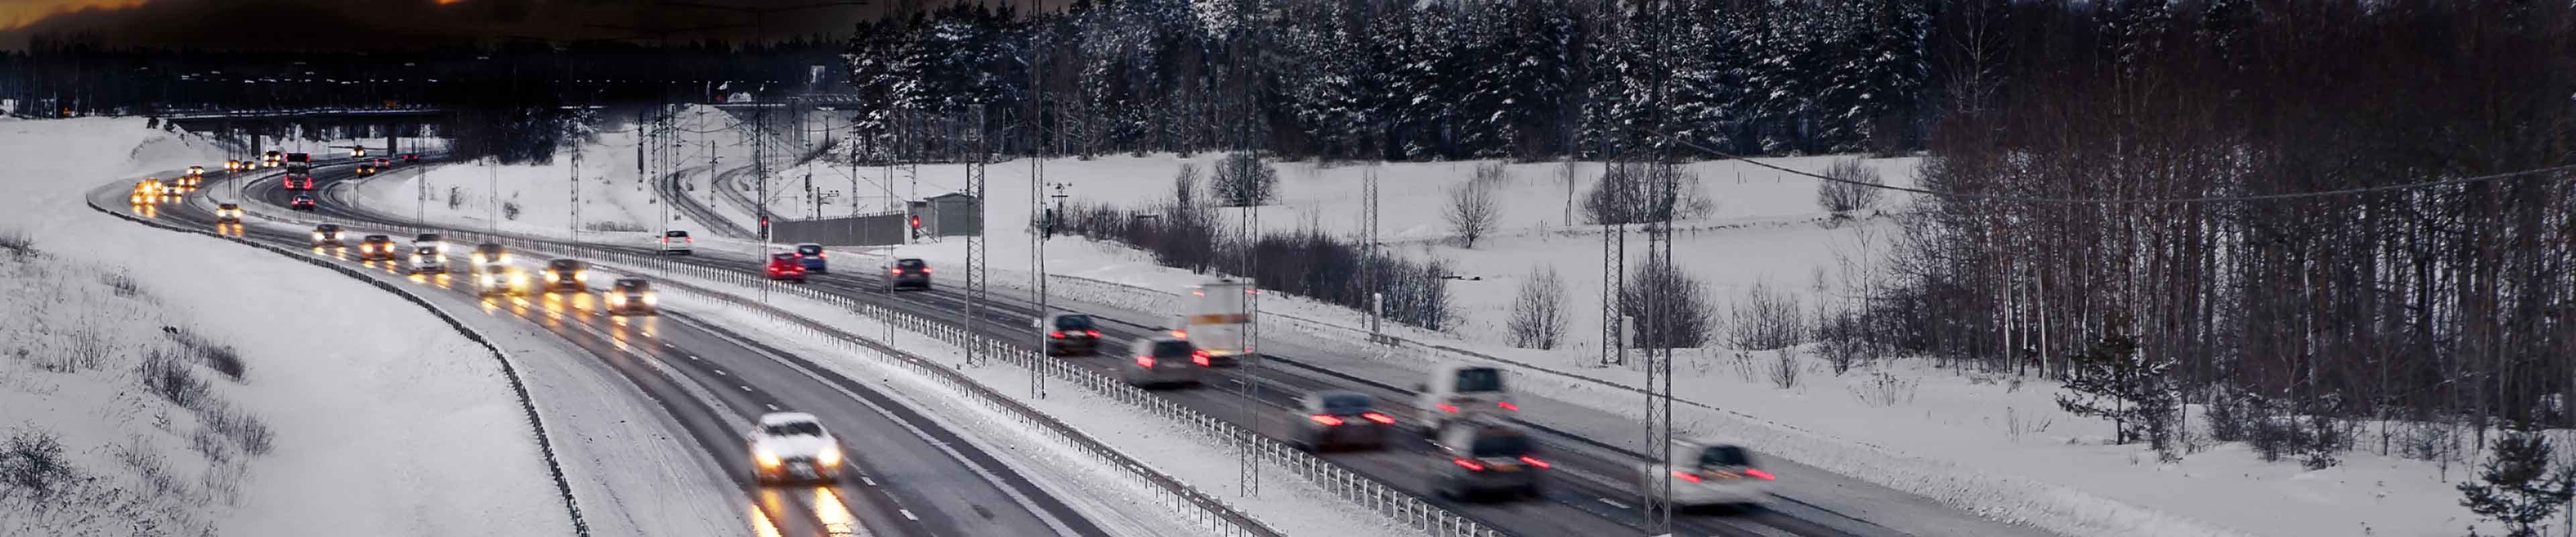 Heavy traffic on snowy, wintery roads.